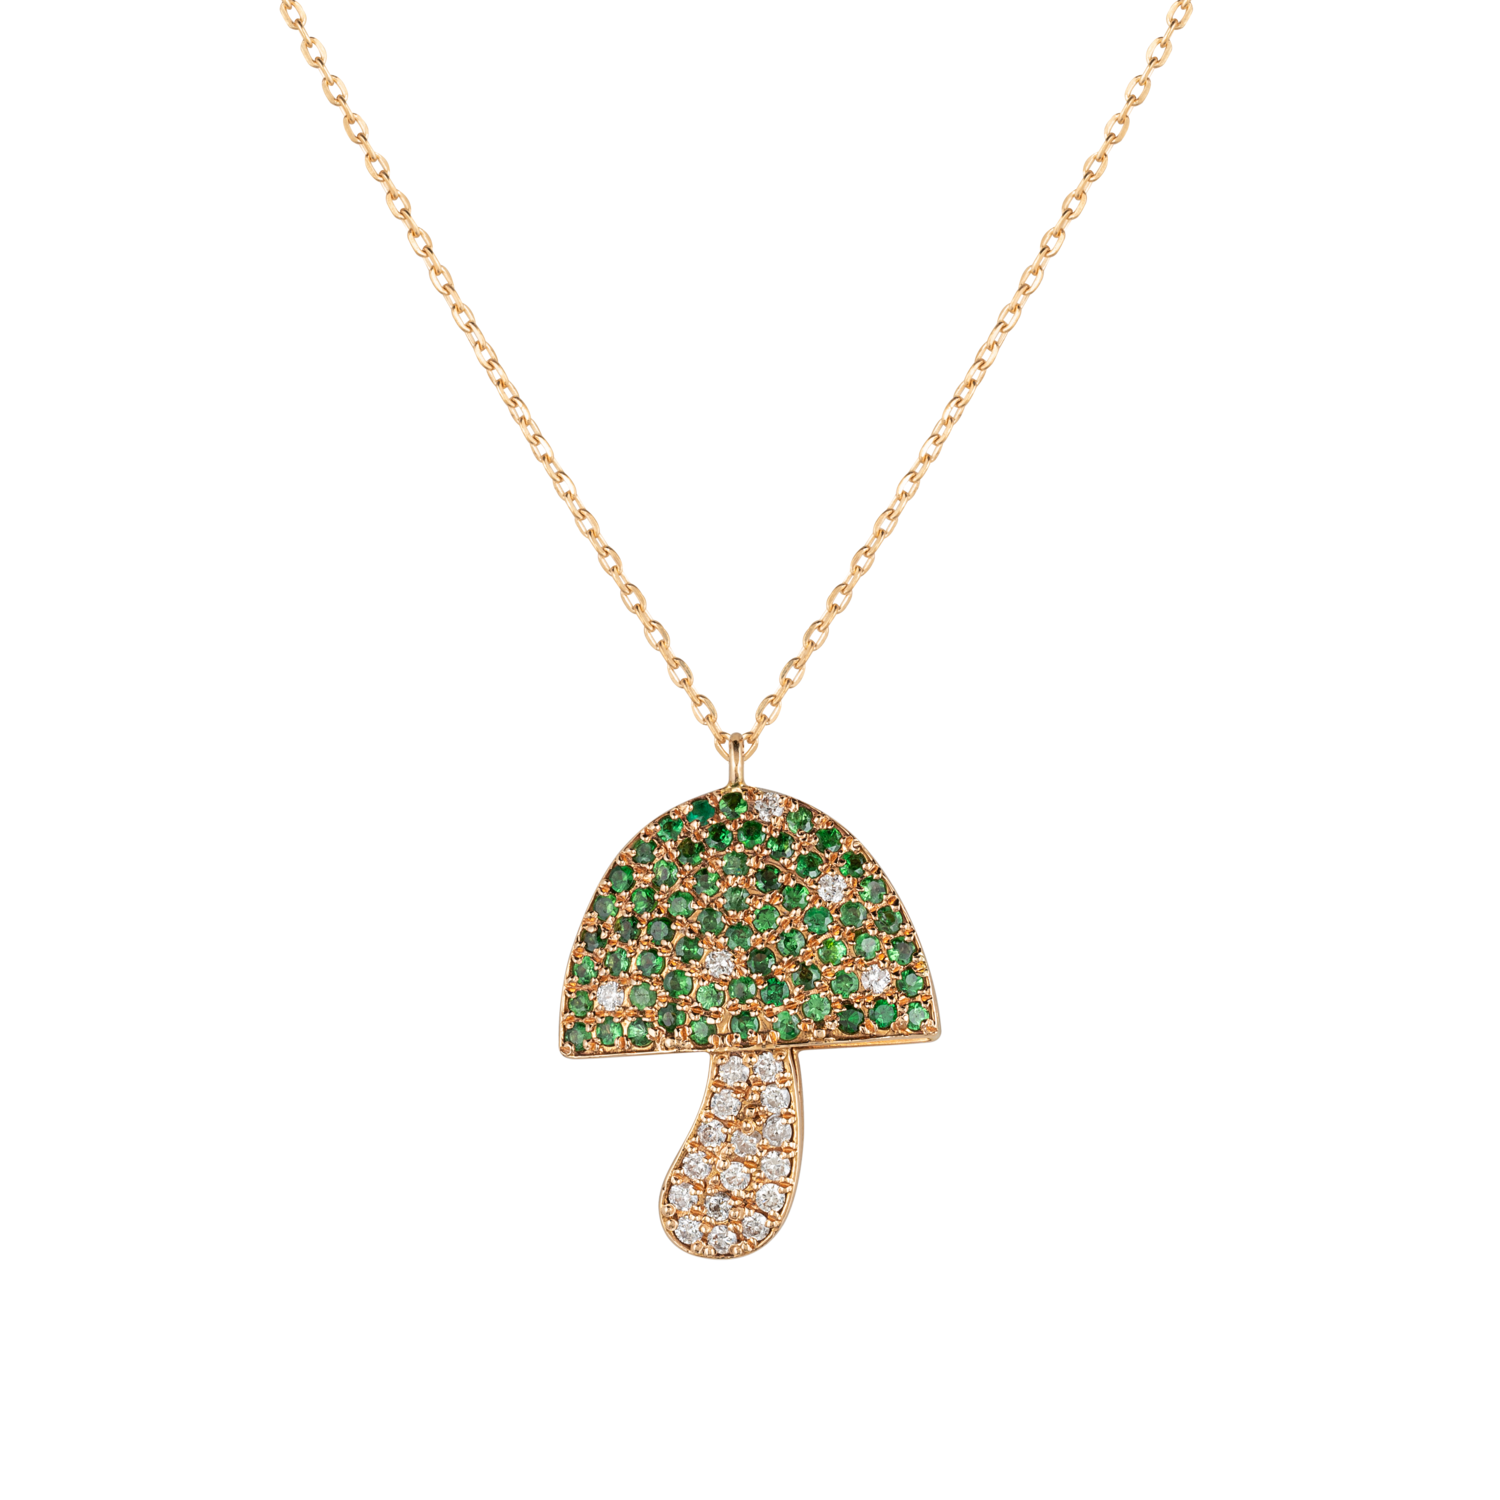 Wild Mushroom Diamond Necklace with Precious Stones